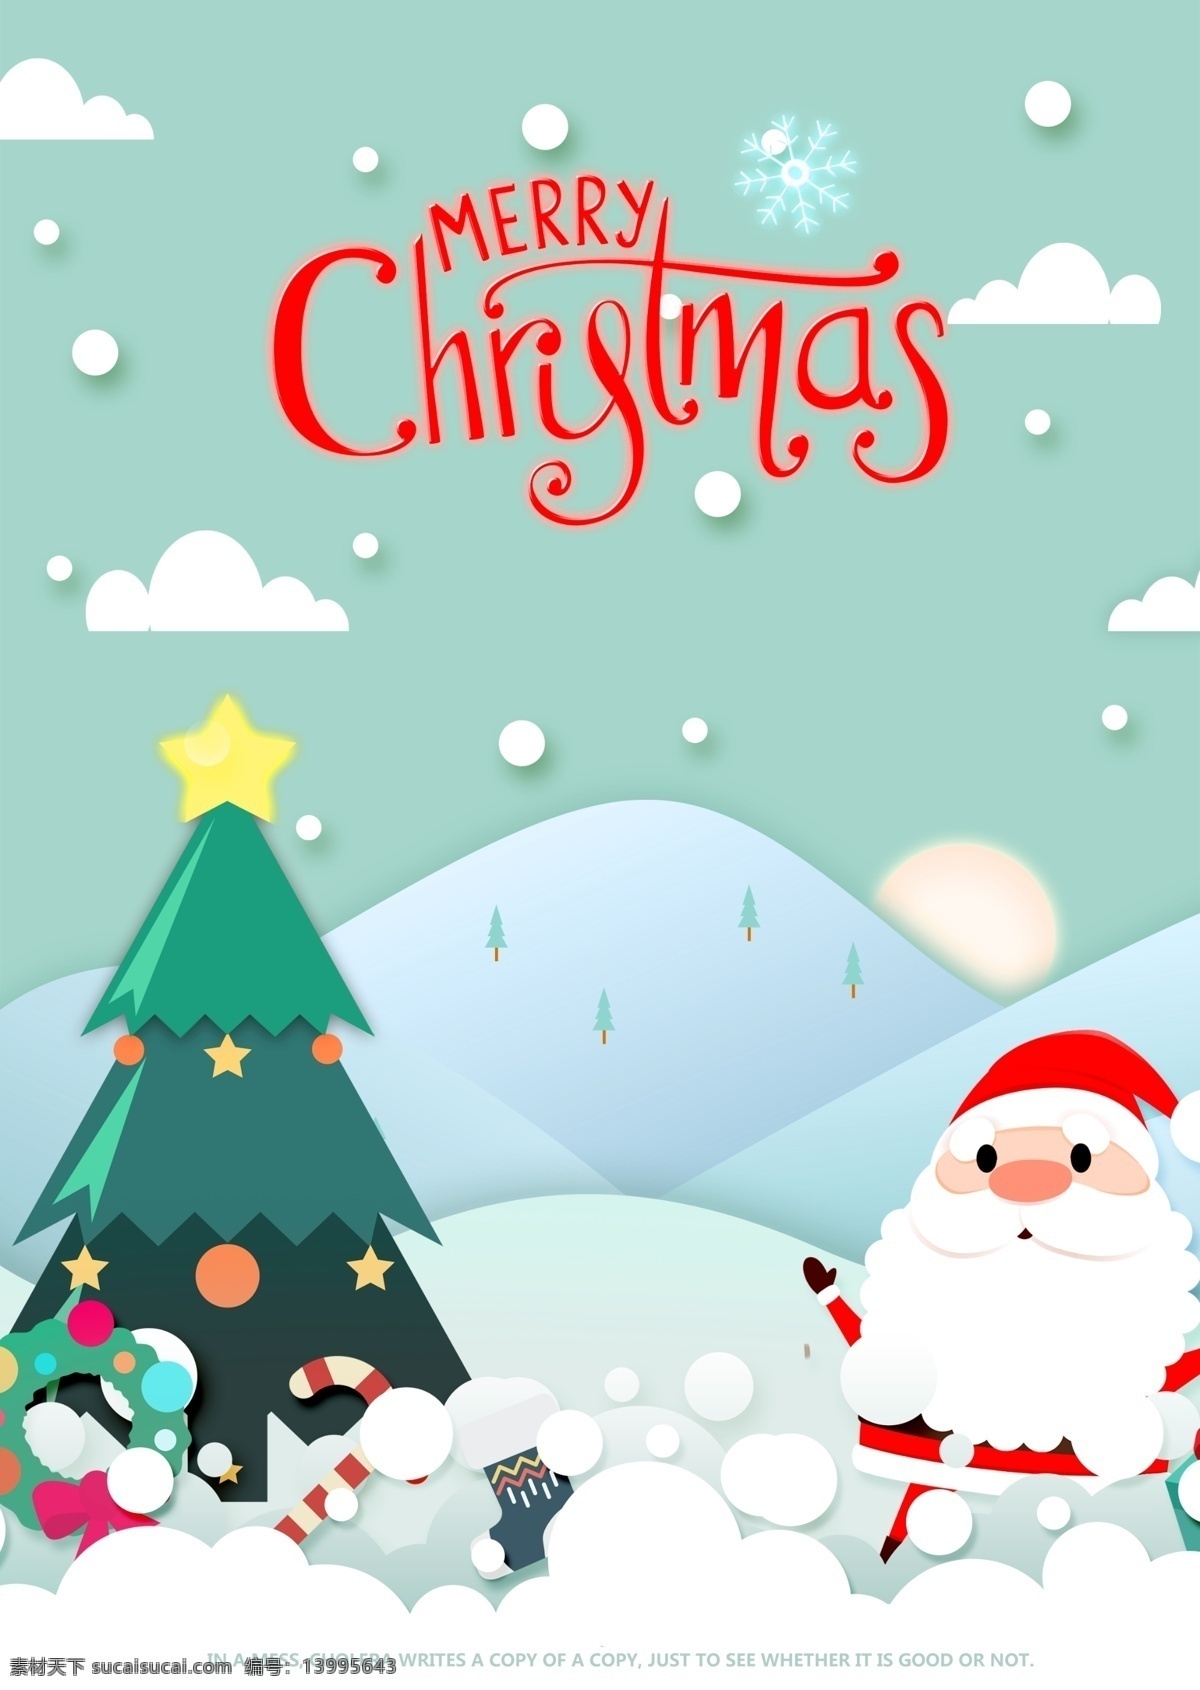 圣诞老人 圣诞节 海报 2018 年 xie 风格 雪 祝你圣诞快乐 圣诞 圣诞树 圣诞促销 圣诞主题海报 圣诞节海报 圣诞活动 谢和圣诞老人